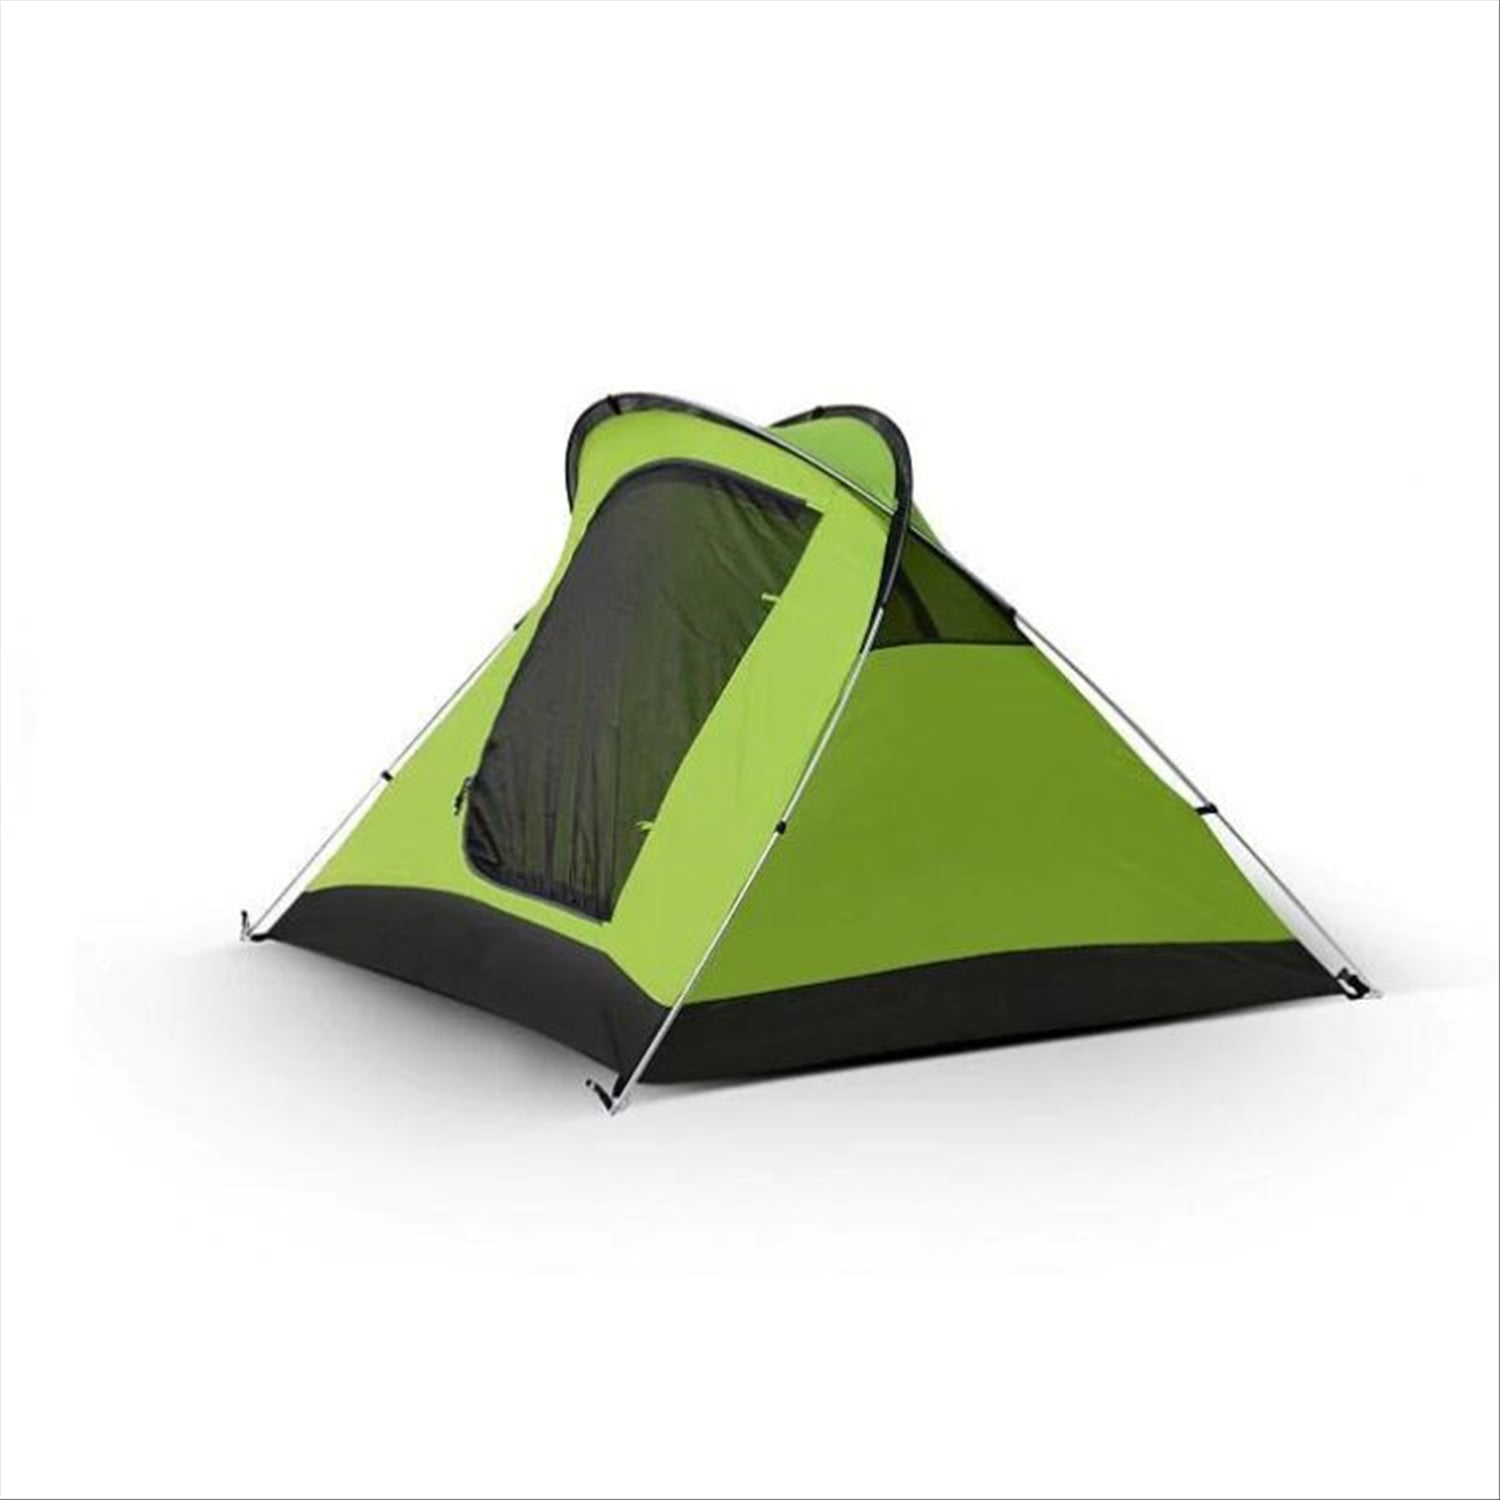 Intents Intents Outdoors Tourer XLV 2 - 2 Person Tent Extra Large Vestibule, 3.4kg